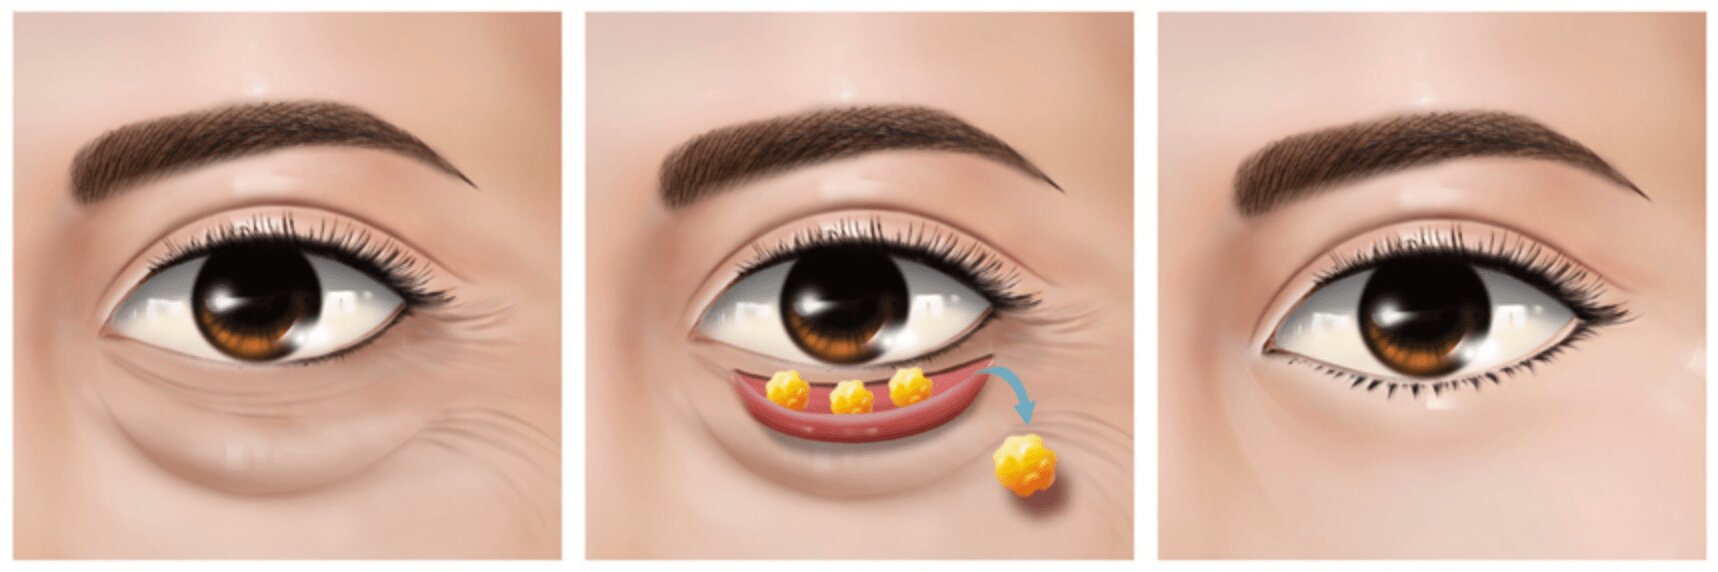 Trước và sau tiểu phẫu lấy mỡ mí mắt dưới